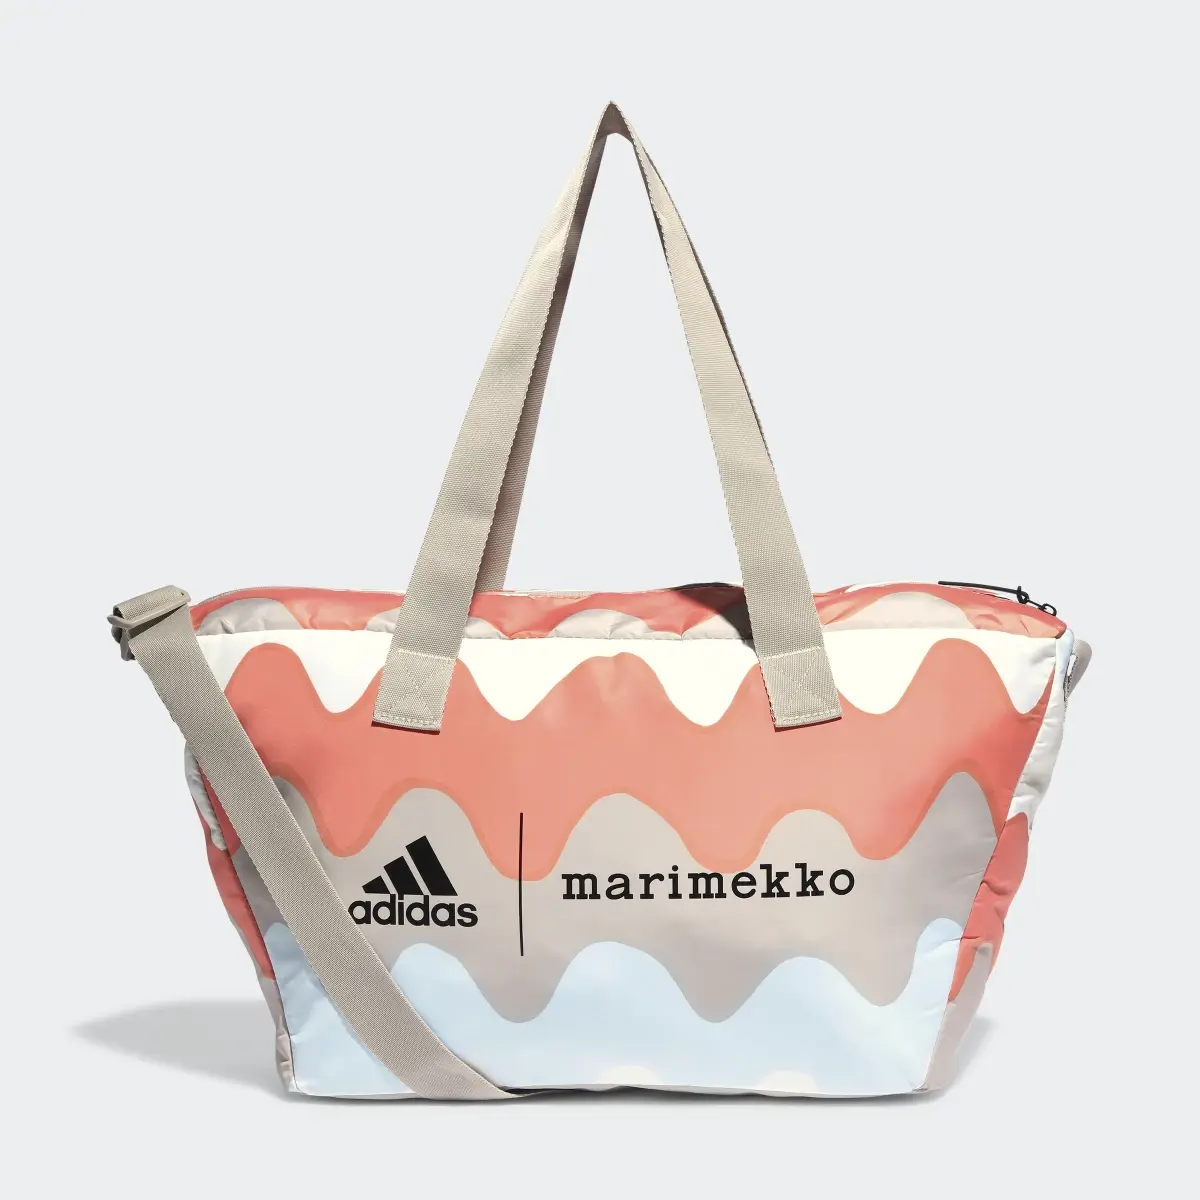 Adidas x Marimekko Shopper Designed 2 Move Training Bag. 2